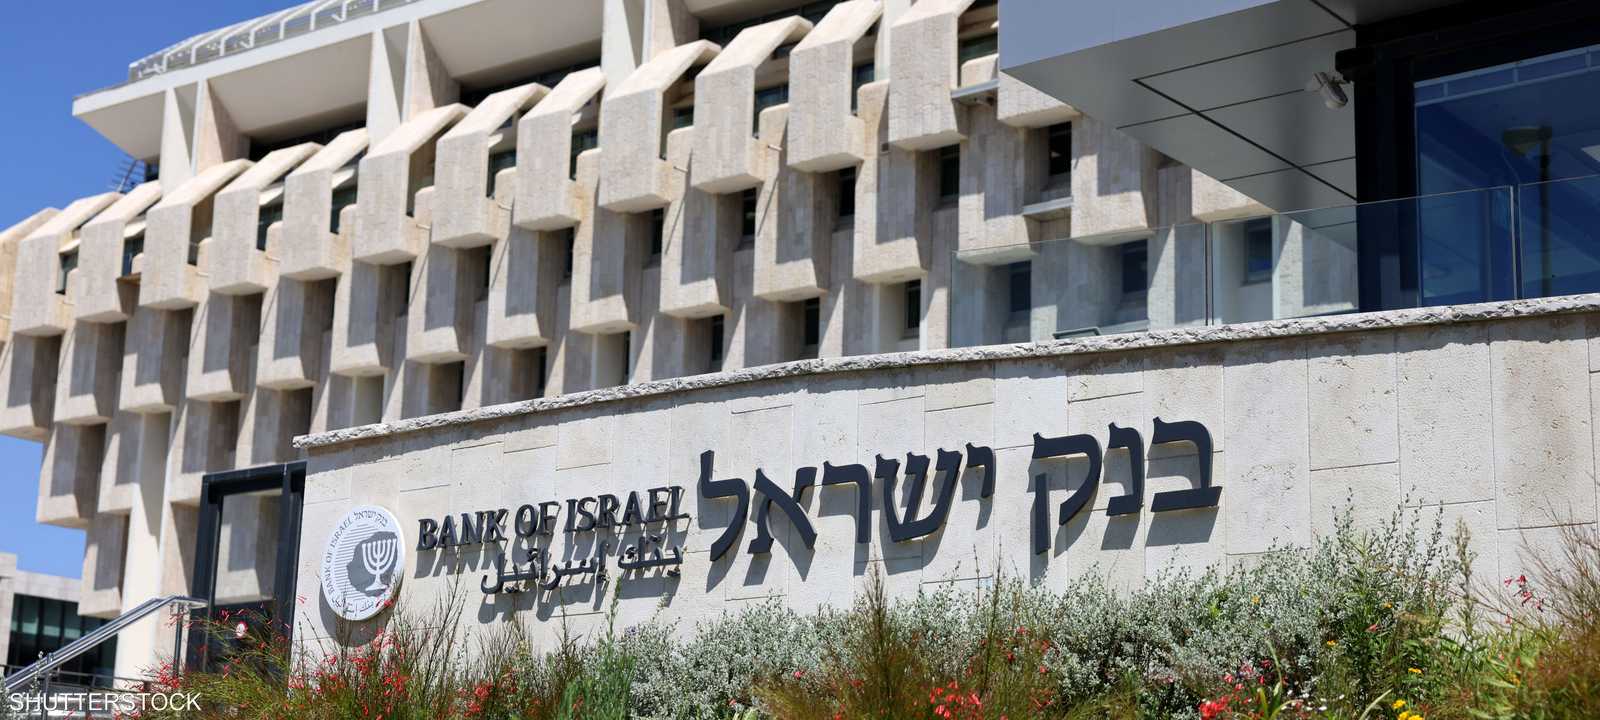 بنك إسرائيل المركزي المركزي الإسرائيلي بنك إسرائيلي